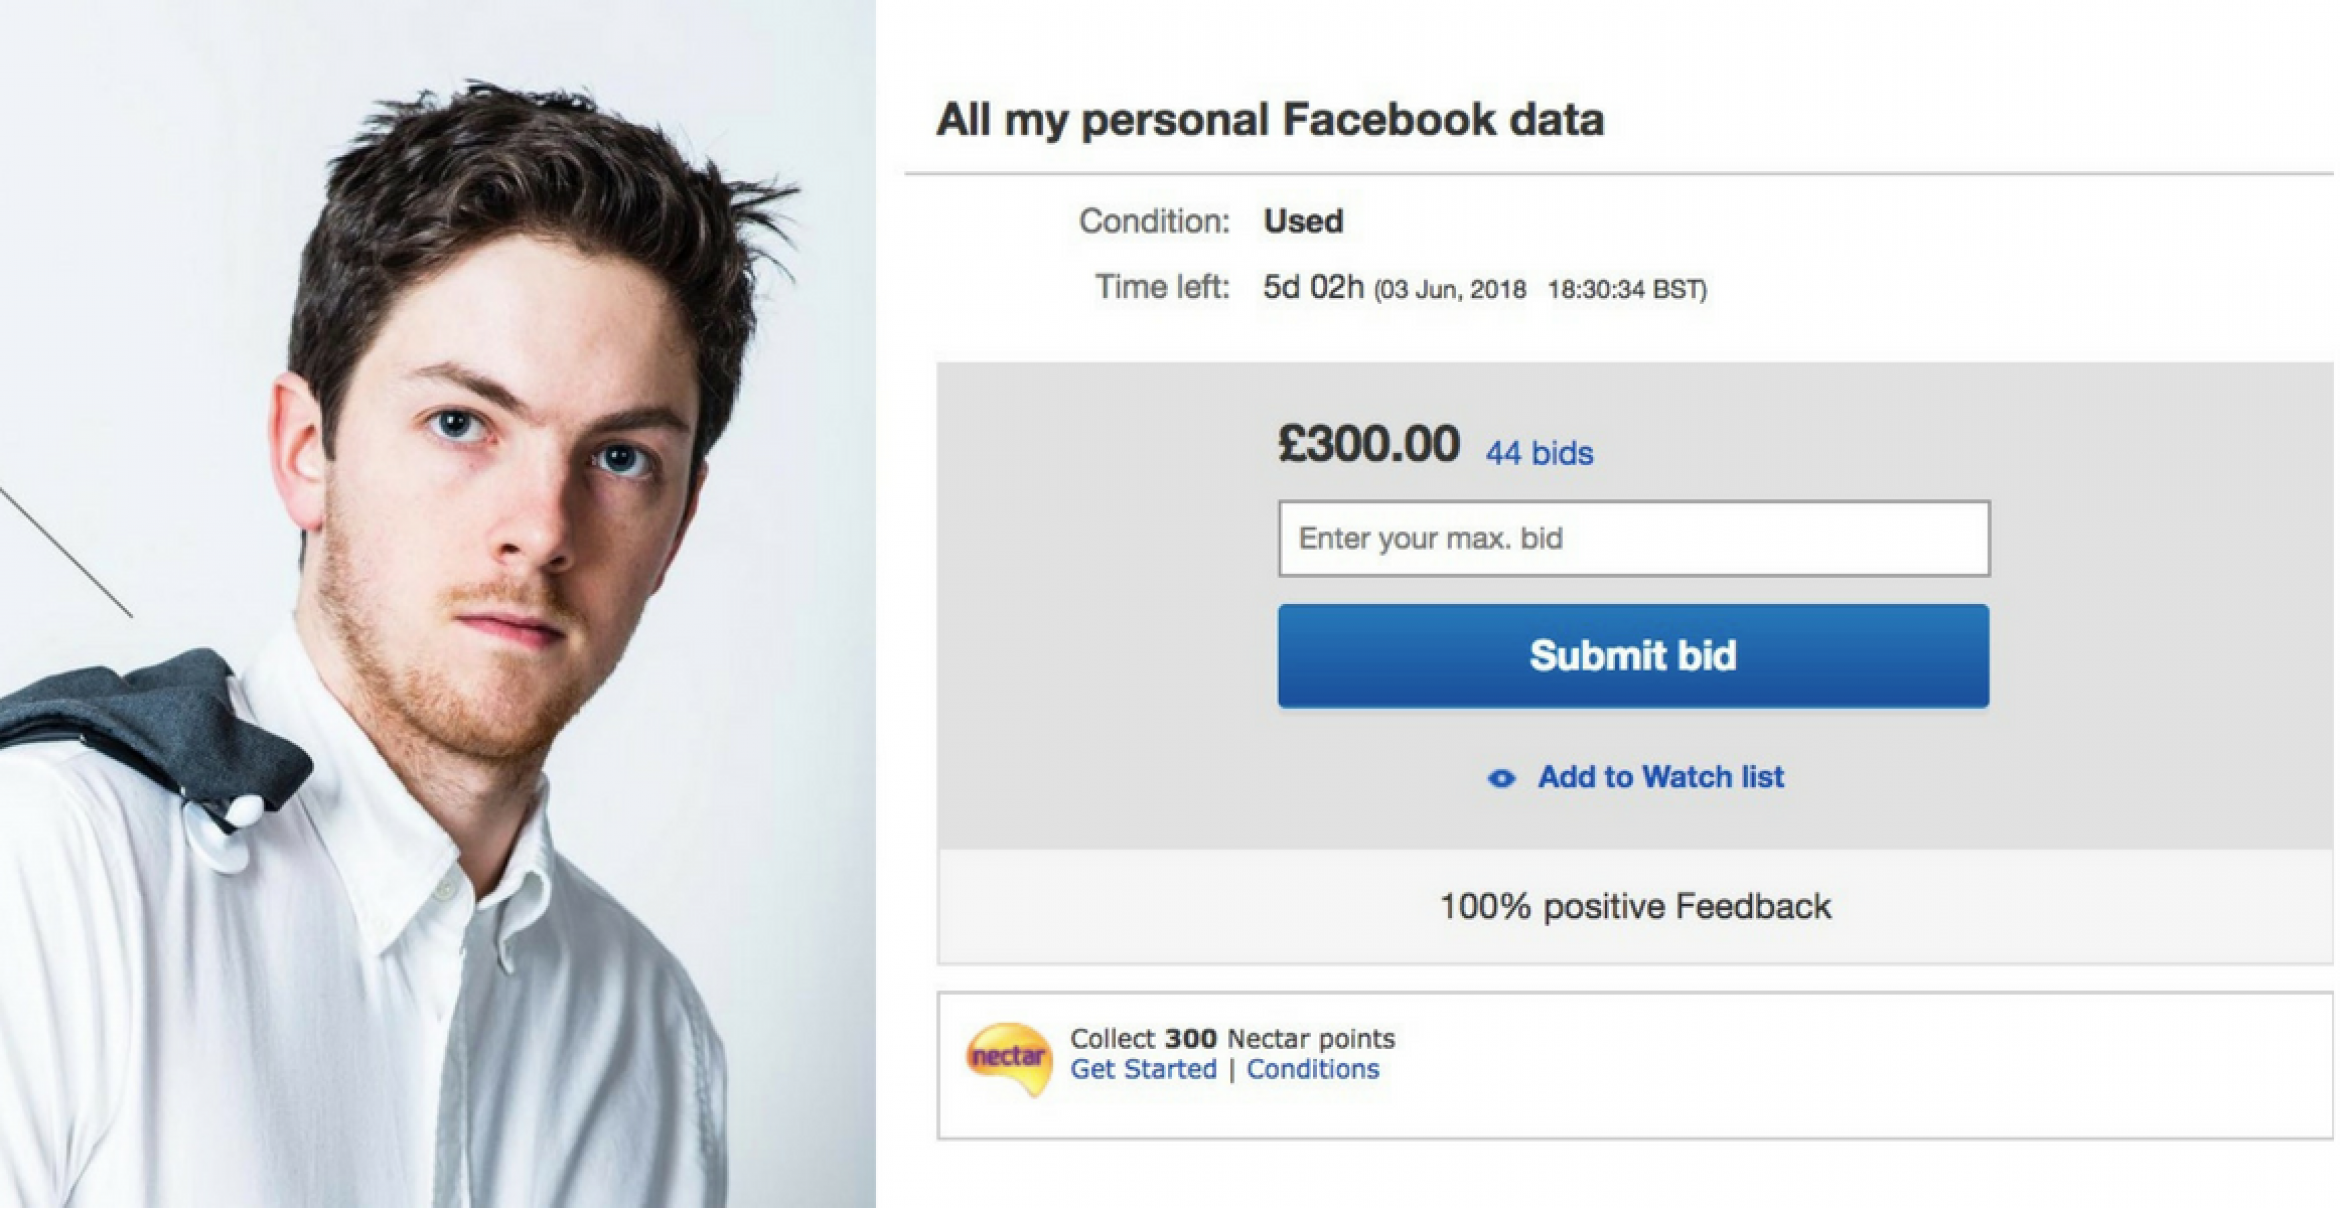 Nebenverdienst: Ein Typ verkauft seine Facebookdaten auf Ebay